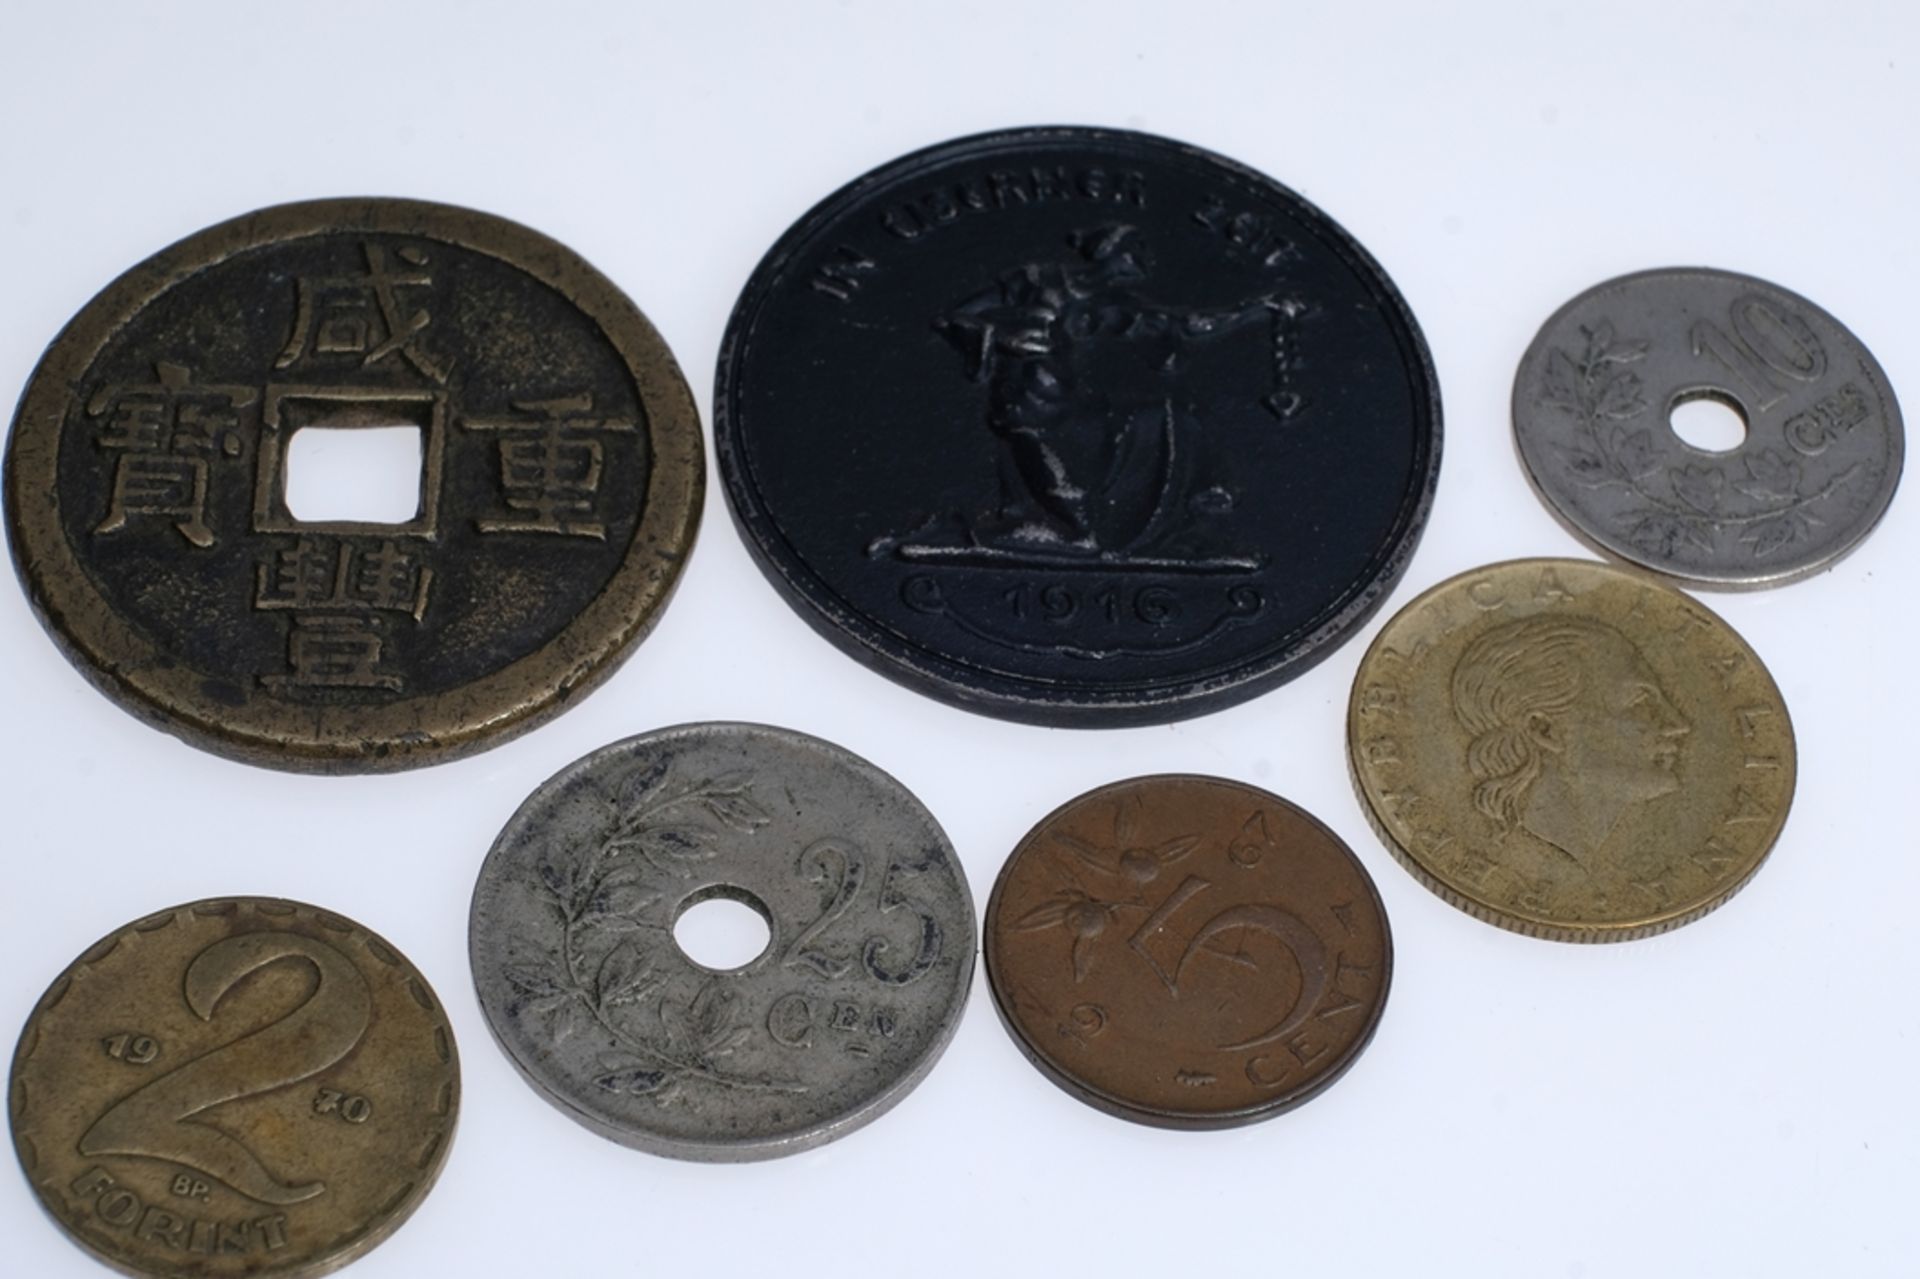 Münzen-Lot, sieben verschiedene Münzen: "In Eiserner Zeit 1916 - Gold gab ich zur Wehr Eisen nahm i